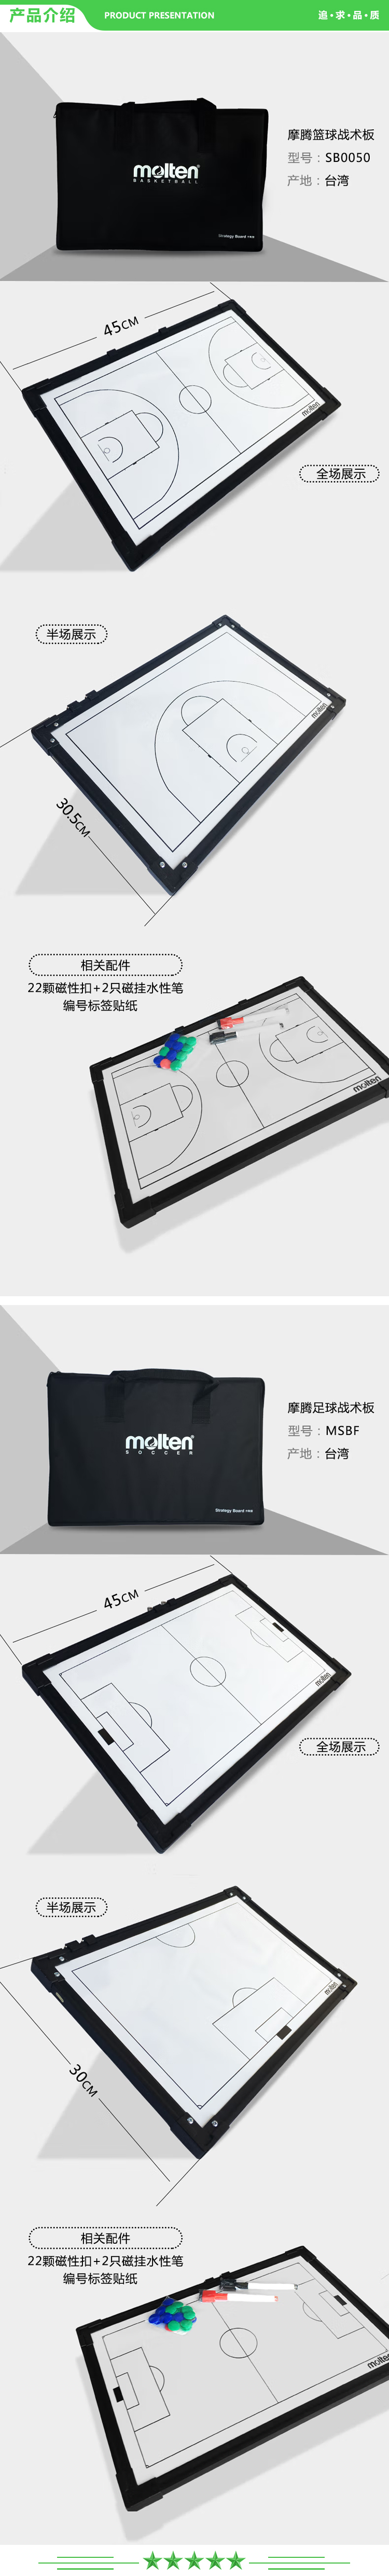 摩腾 molten SB0050 篮球战术板 足球作战板 排球教练装备.jpg